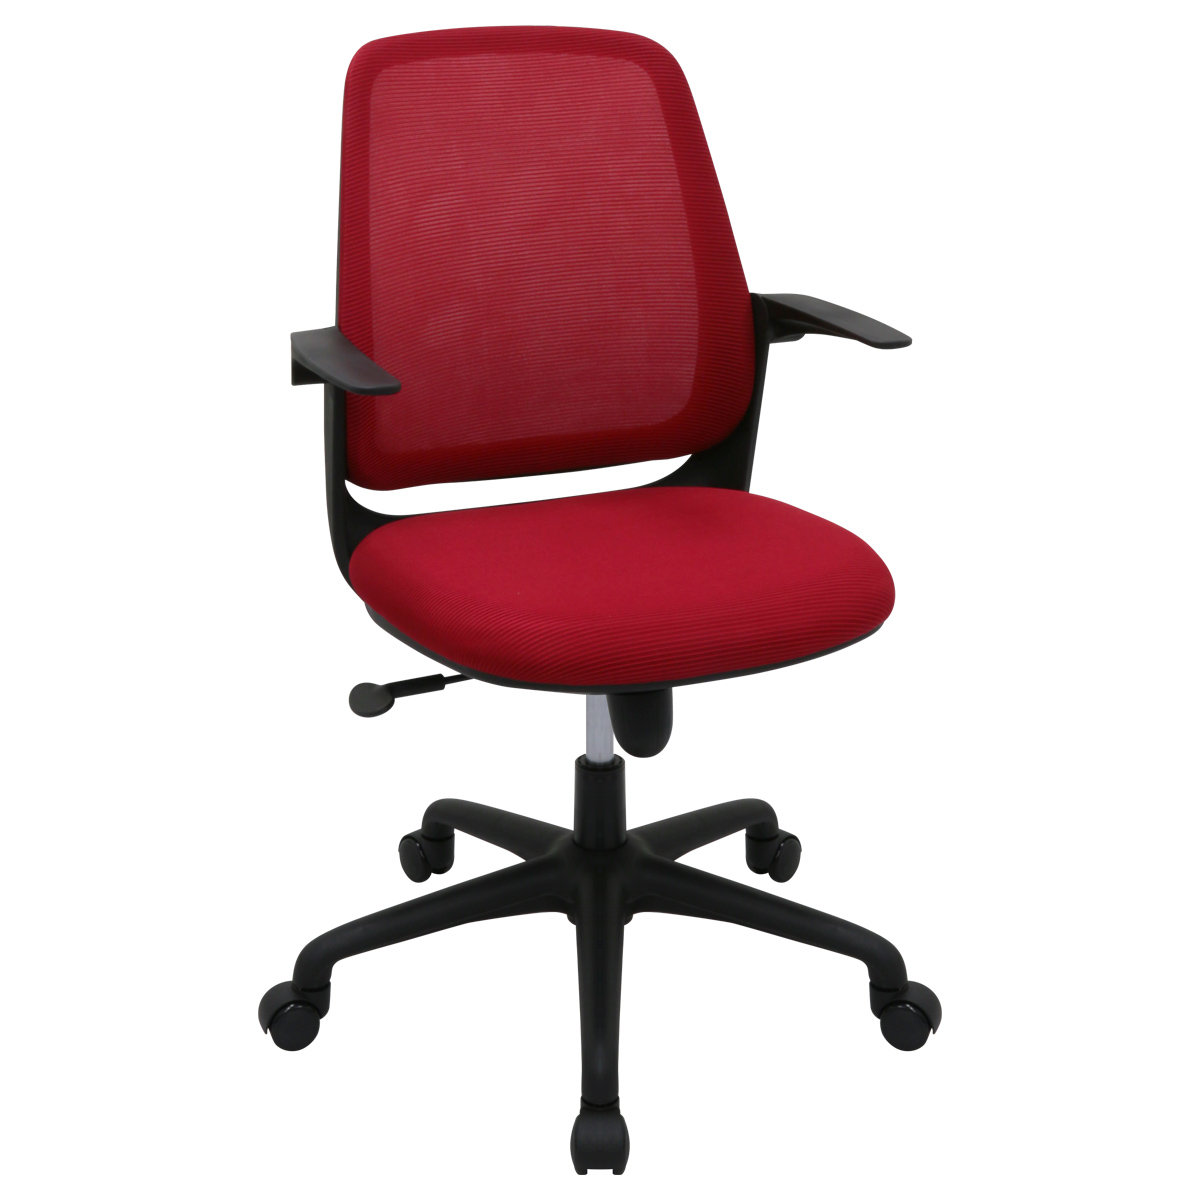 メッシュチェアBR 幅485 奥行560 高さ885-980 BR-1683 通販 オフィスチェア・事務椅子 オフィス家具のカグクロ